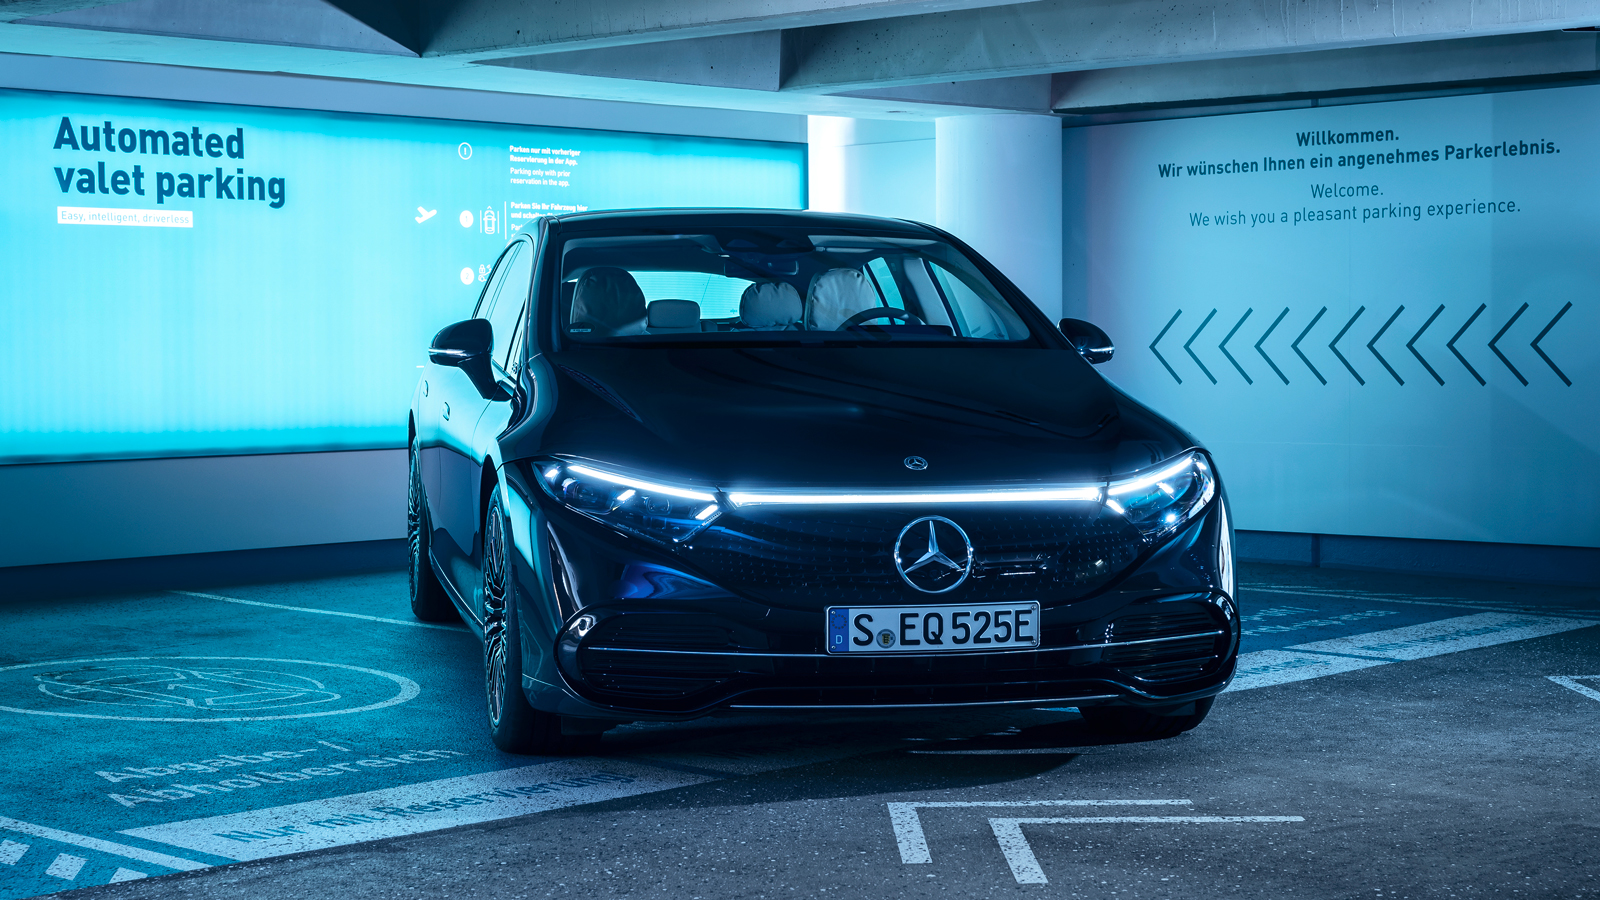 Πρωτιά για Mercedes-Benz: To αυτόνομο σύστημα στάθμευσης της πήρε έγκριση για εμπορική χρήση